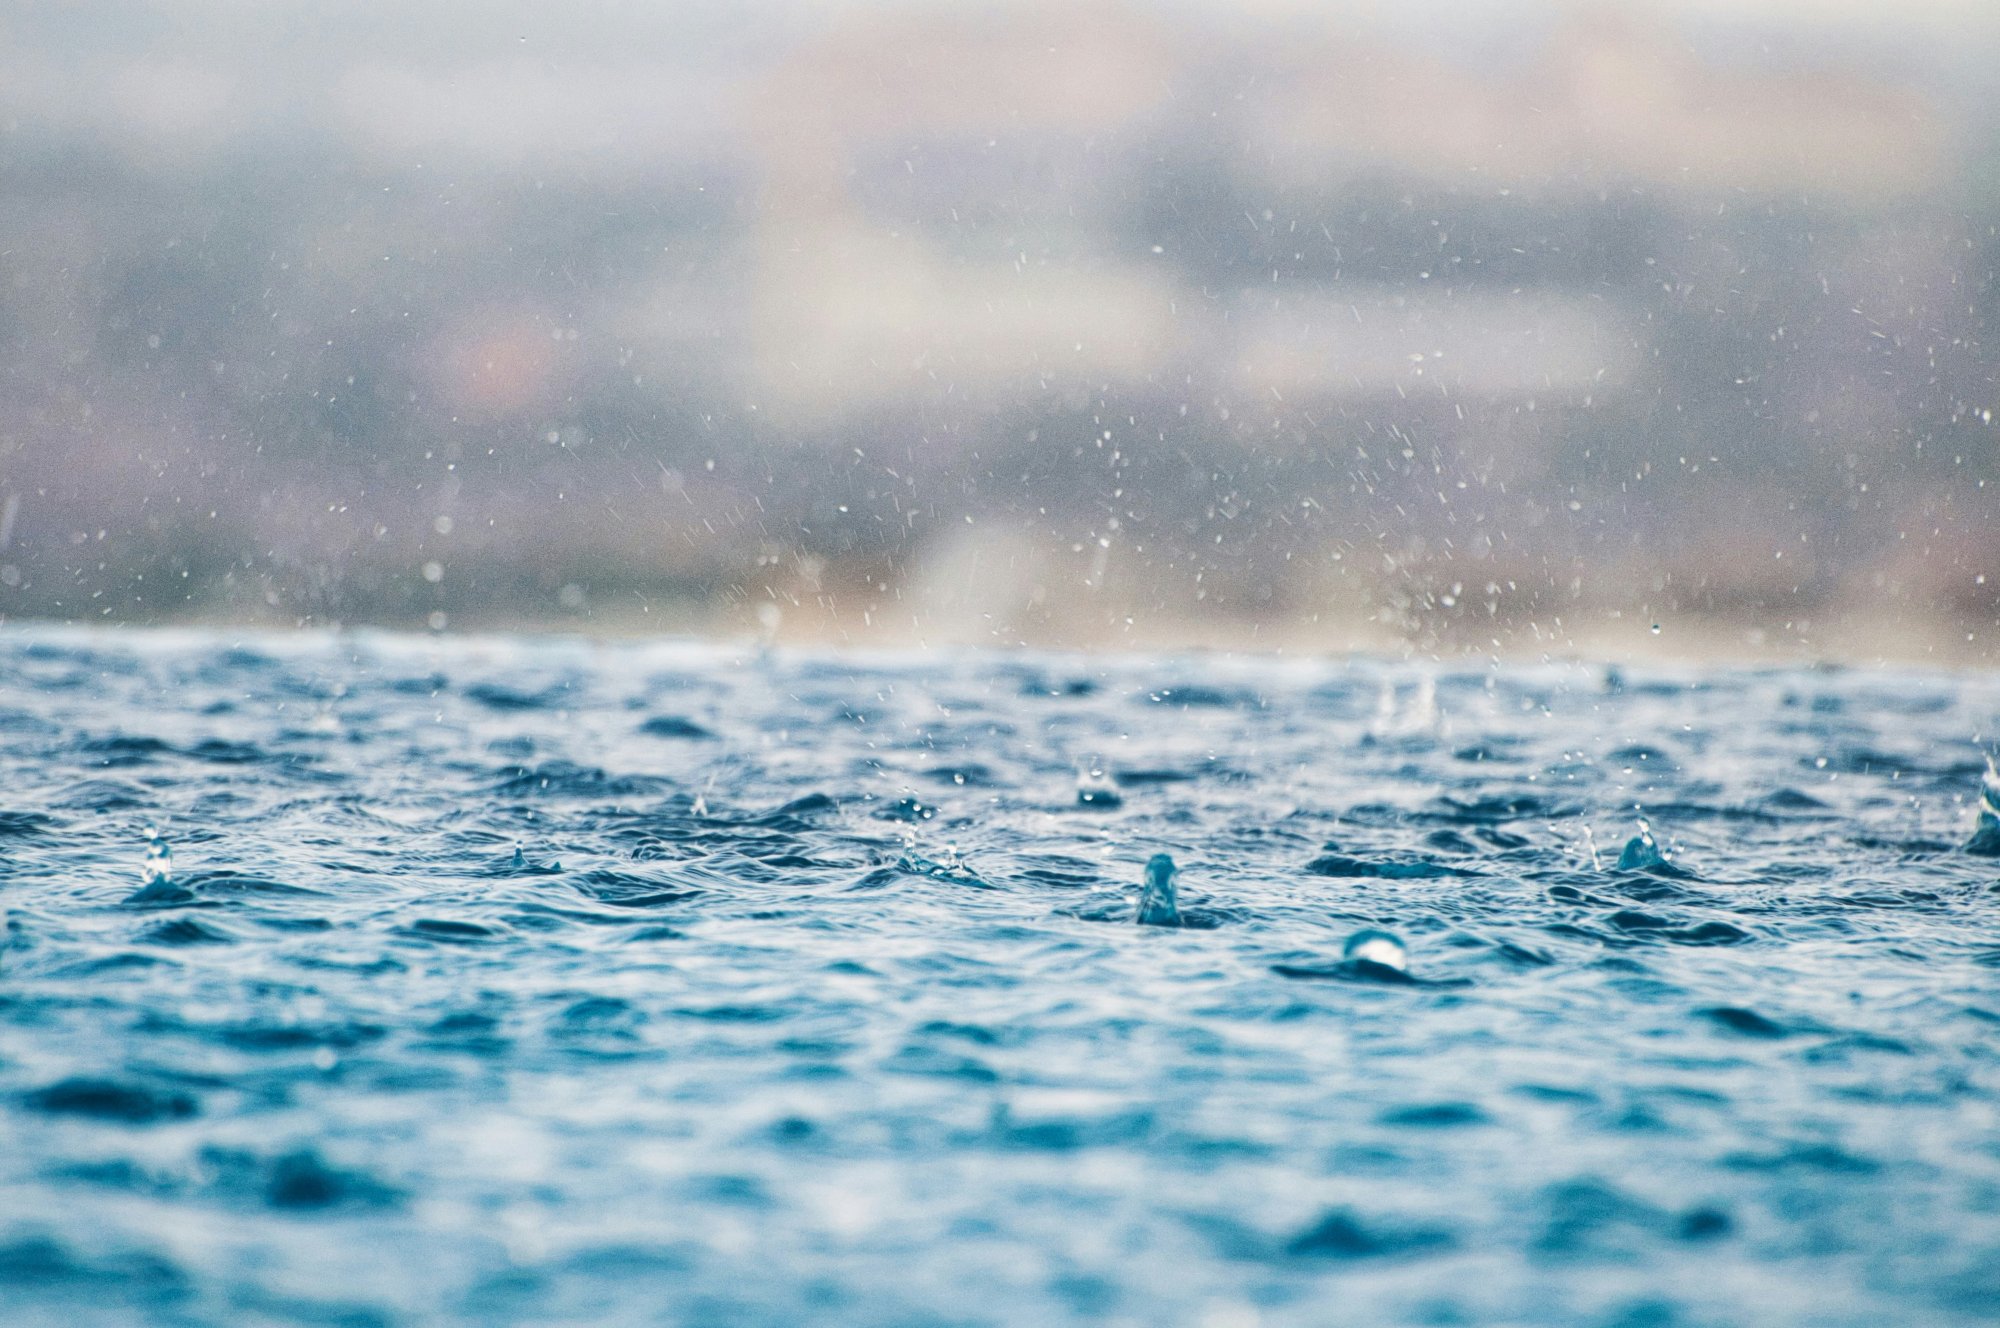 Η ικανότητα να μυρίζεις τη βροχή πριν έρθει δεν είναι μύθος – Τι ισχυρίζονται οι επιστήμονες